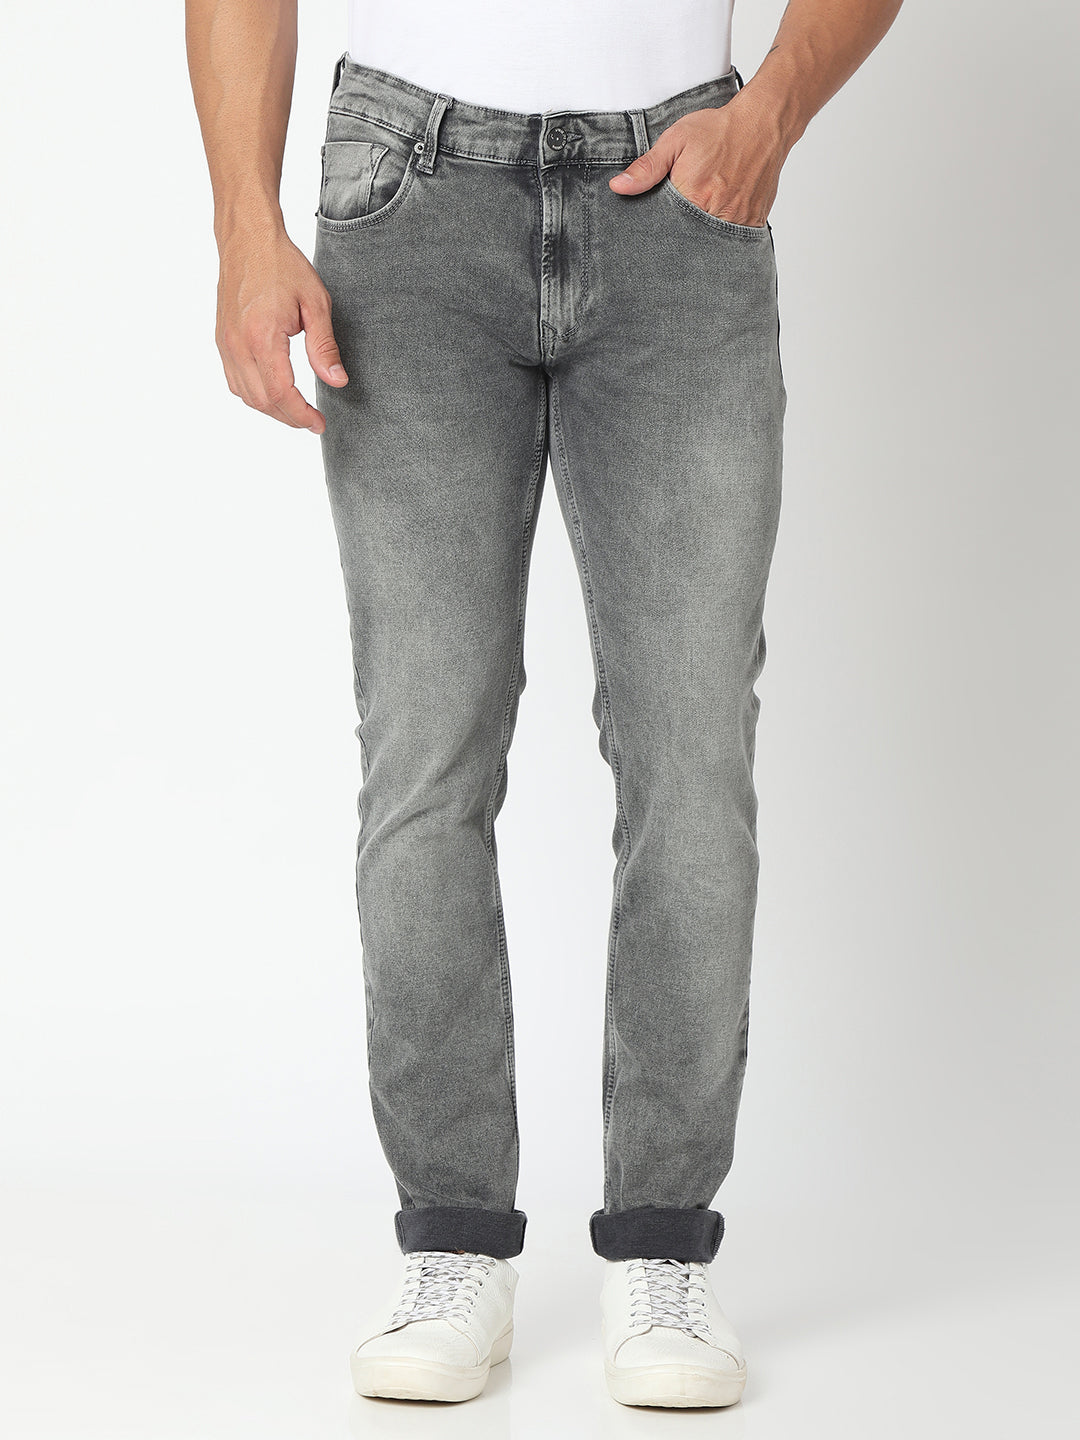 Buy online Men Gray Denim Jeans